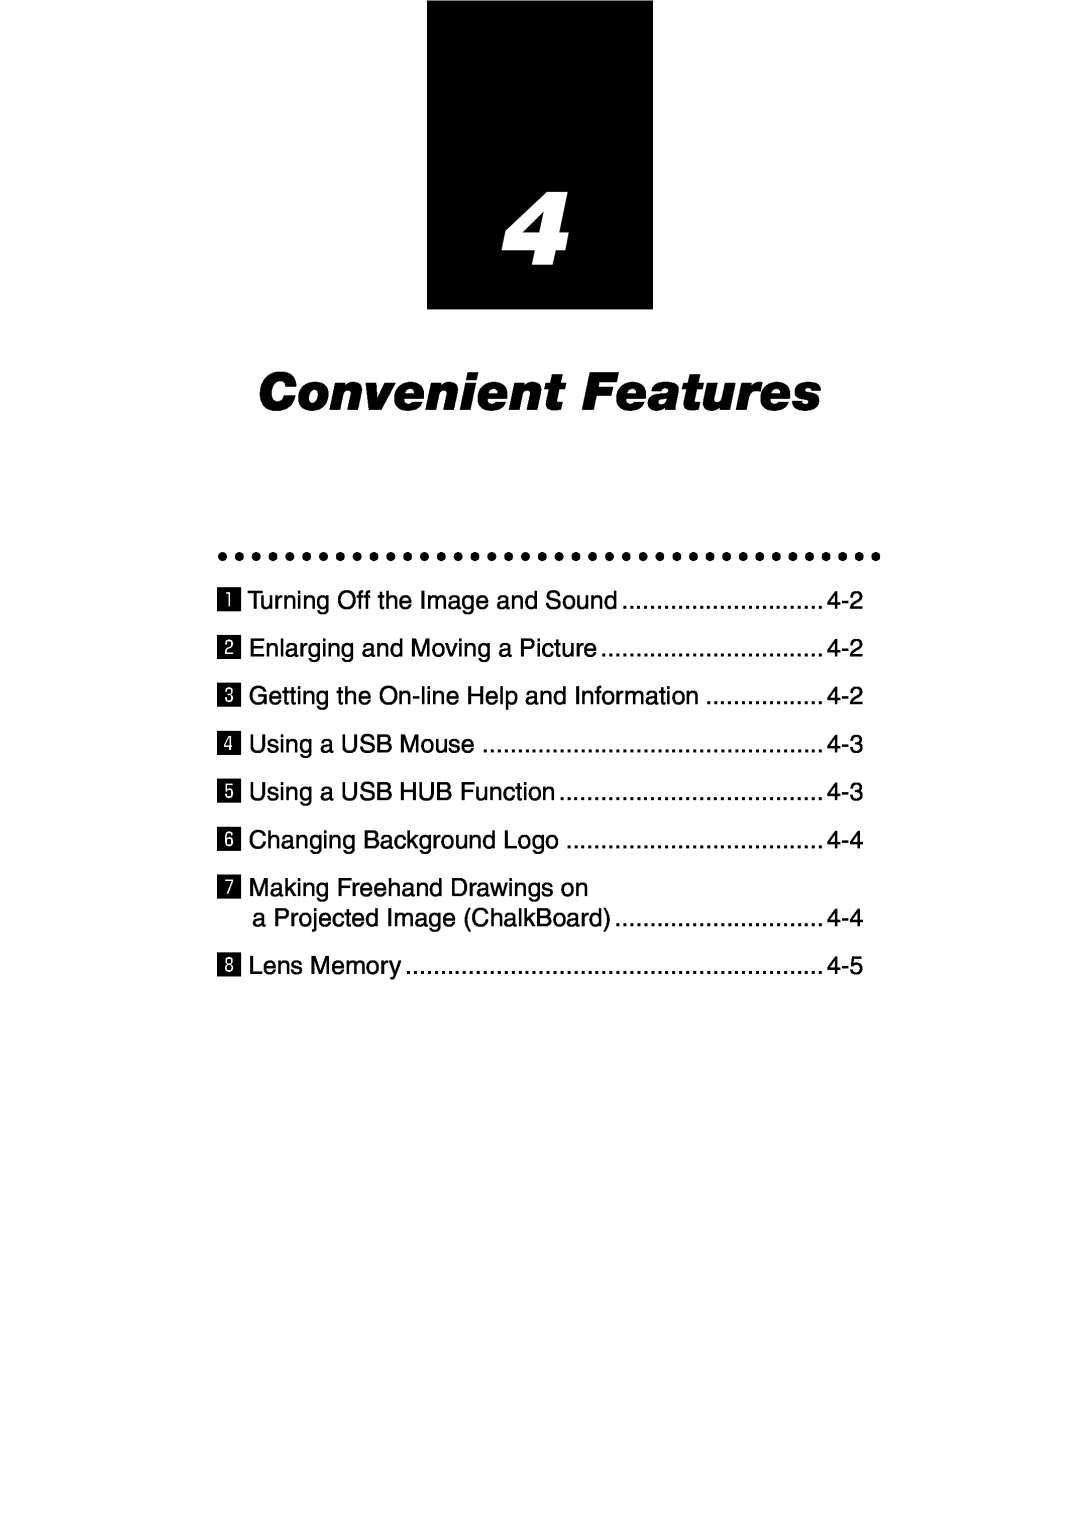 NEC GT6000 user manual Convenient Features 